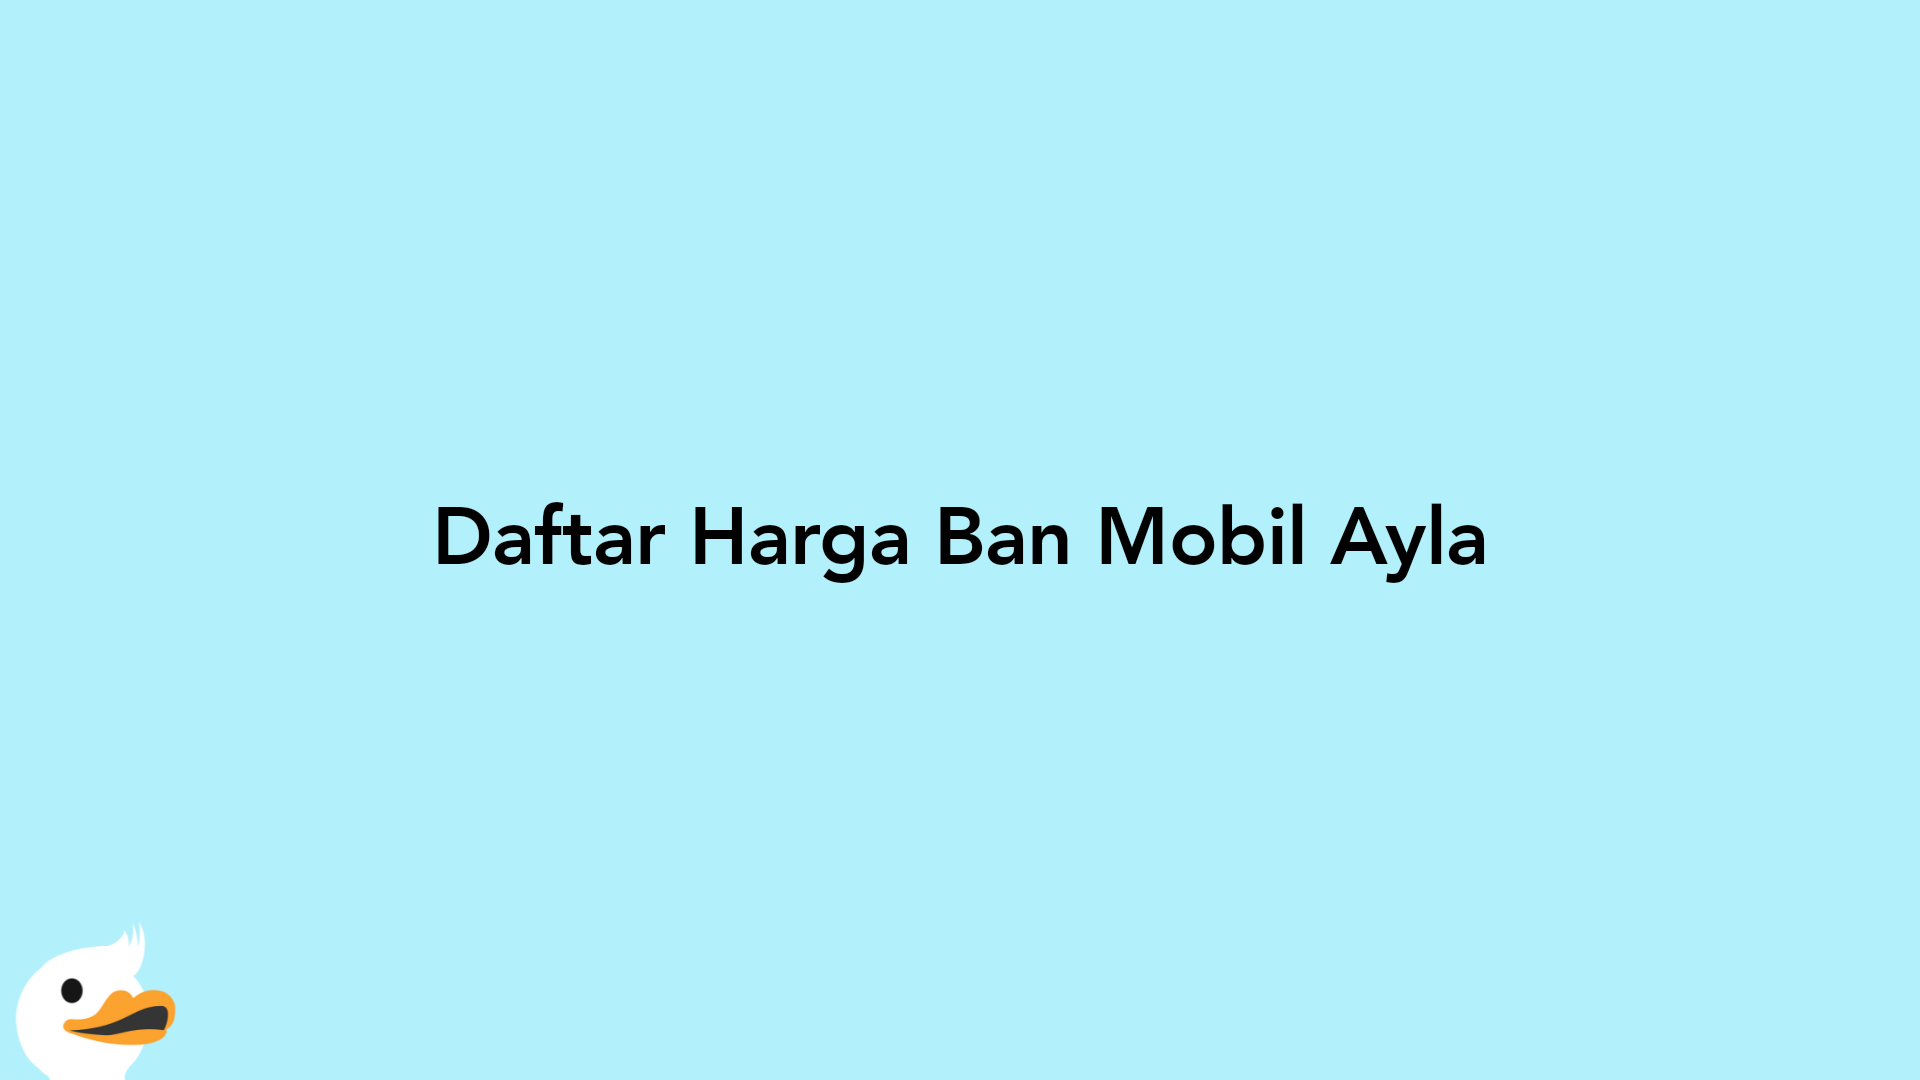 Daftar Harga Ban Mobil Ayla